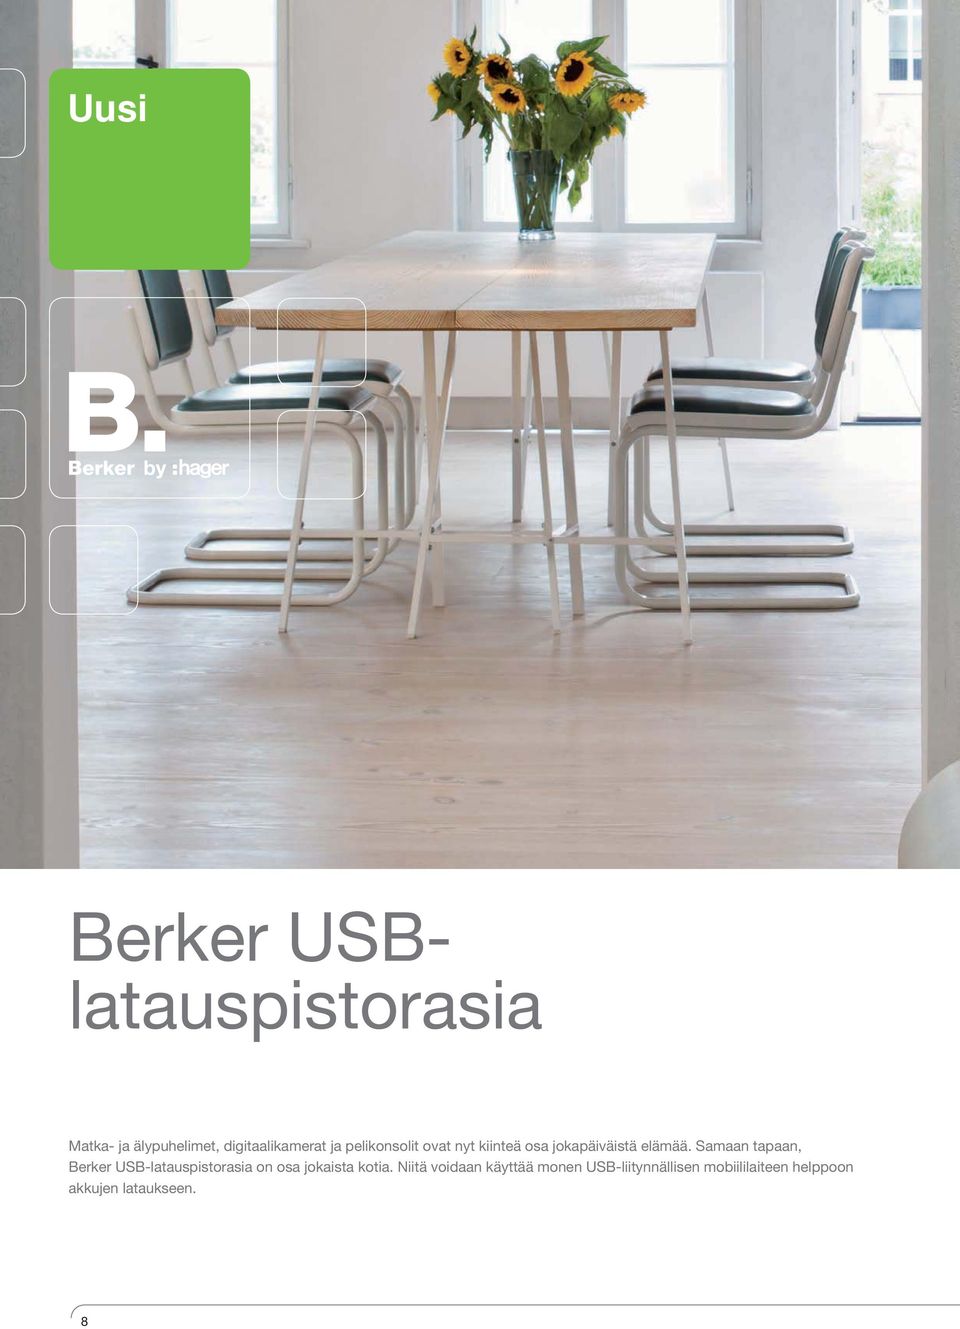 Samaan tapaan, Berker USB-latauspistorasia on osa jokaista kotia.